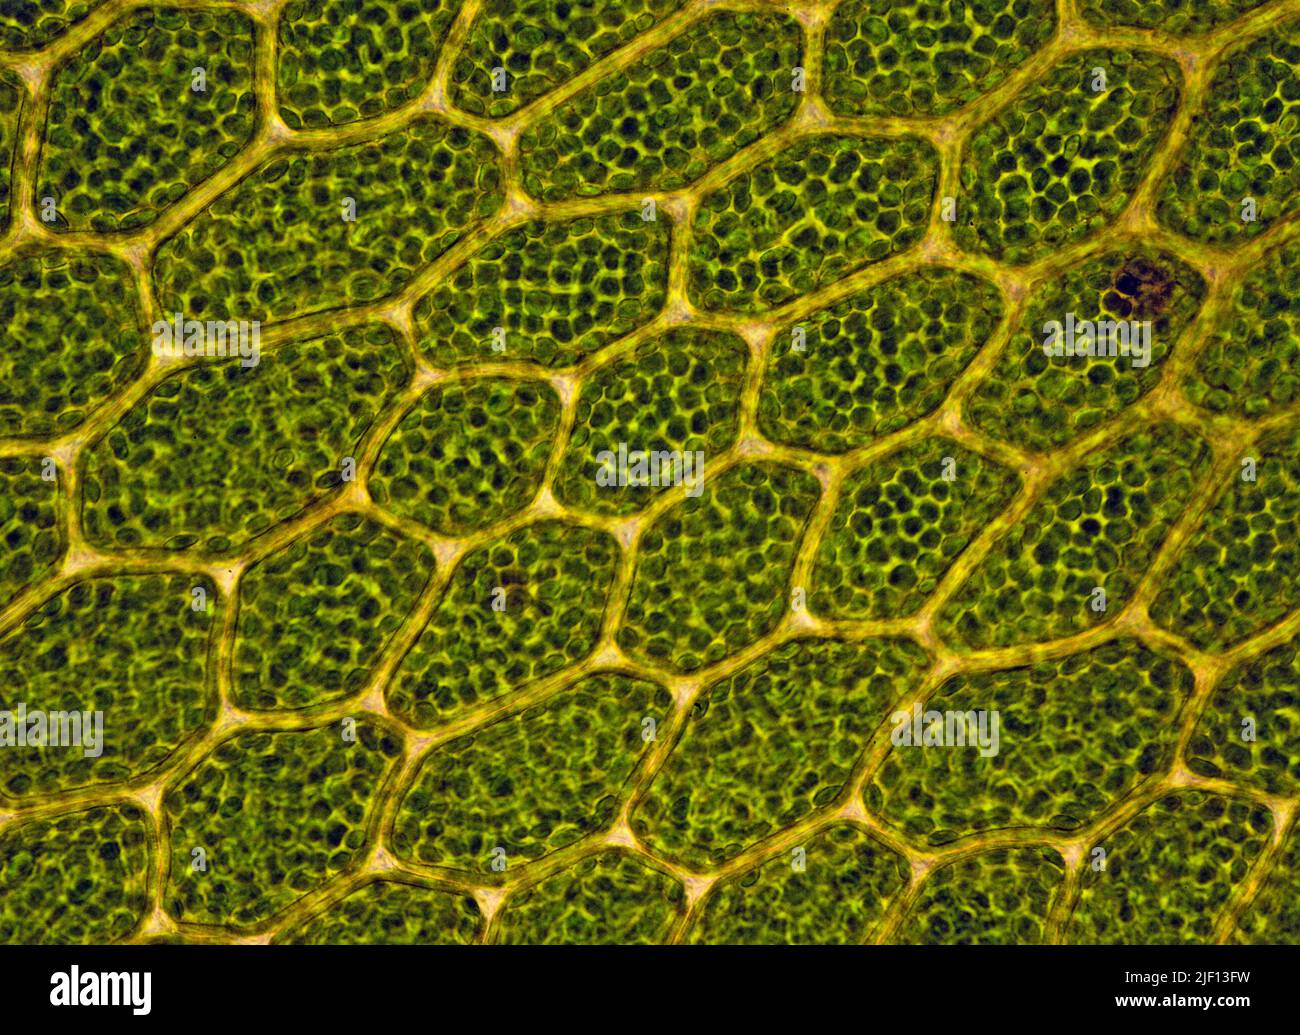 Cellules avec chloroplastes chez les Bryophytes (Mnium sp.). Depuis le sud-ouest de la Norvège. Banque D'Images